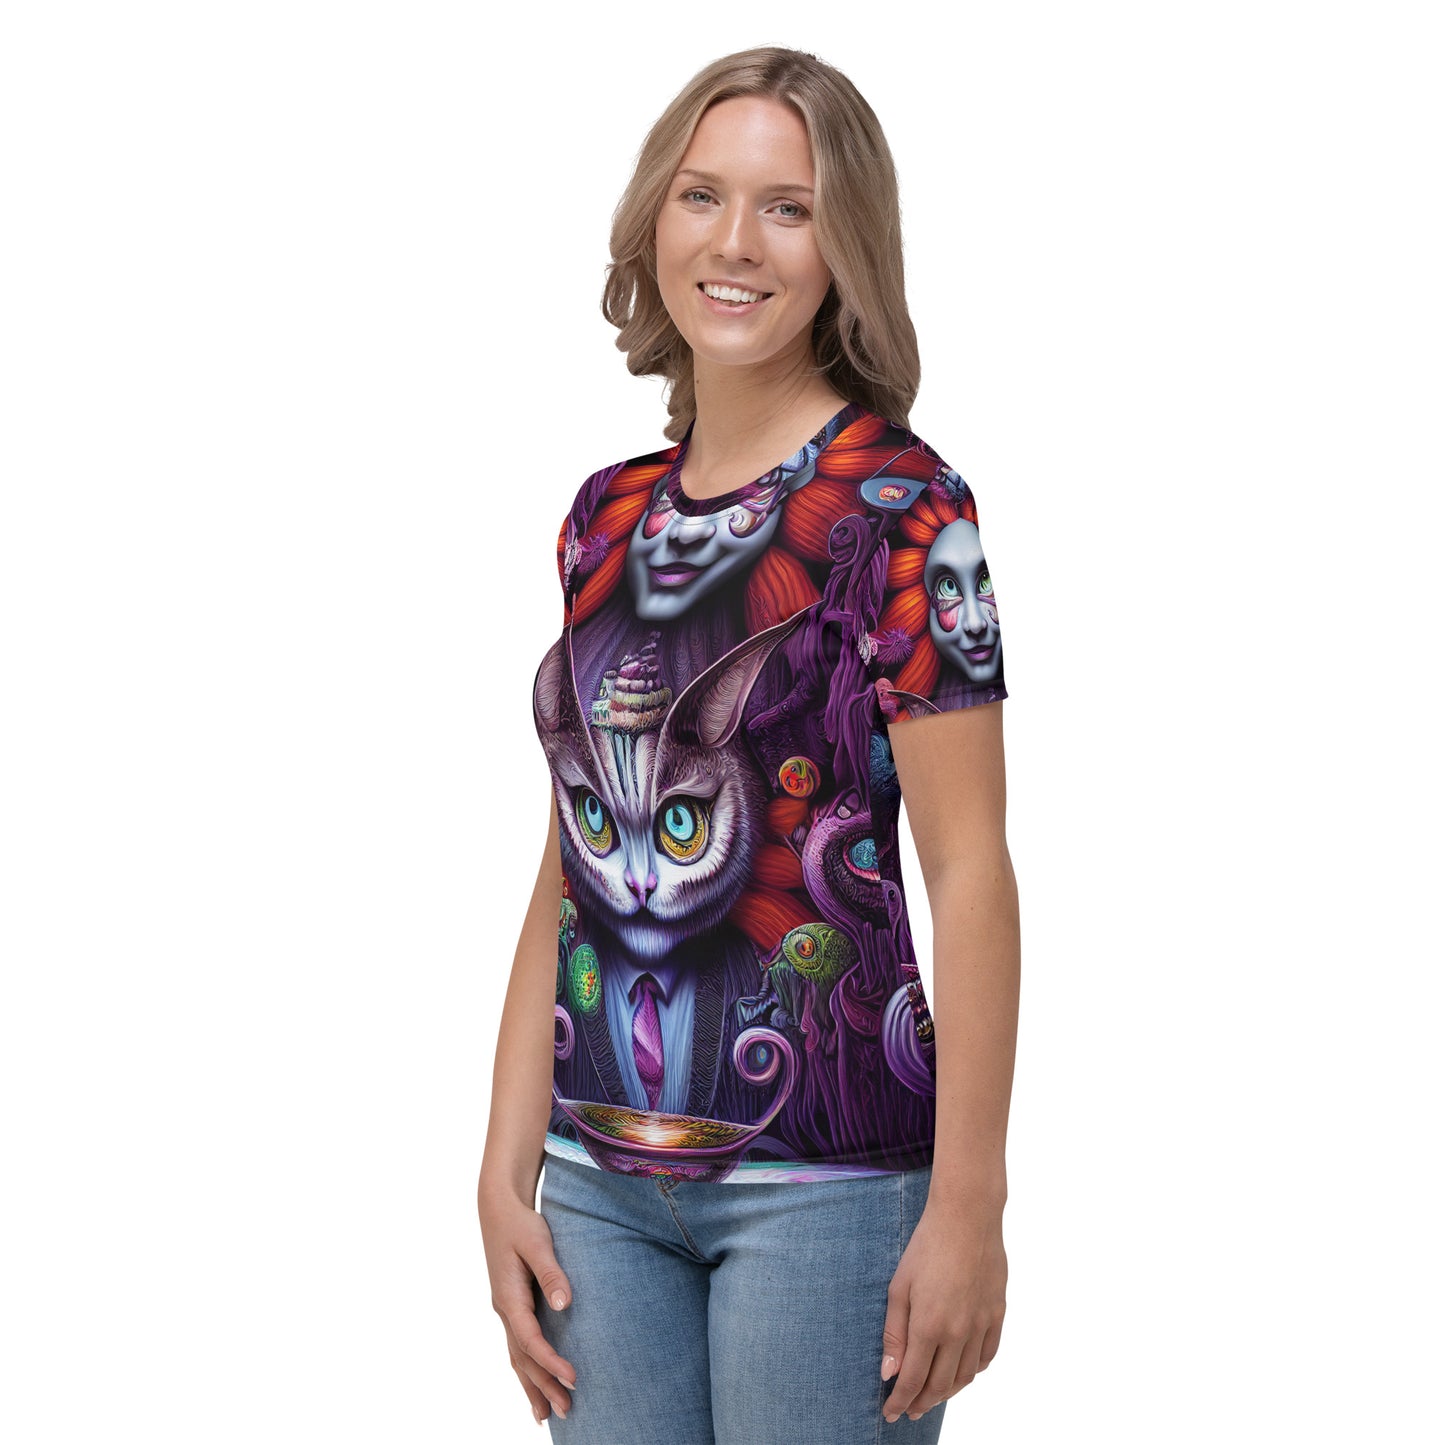 Cheshire Cat in Wonderland 1.0 Women's T-shirt